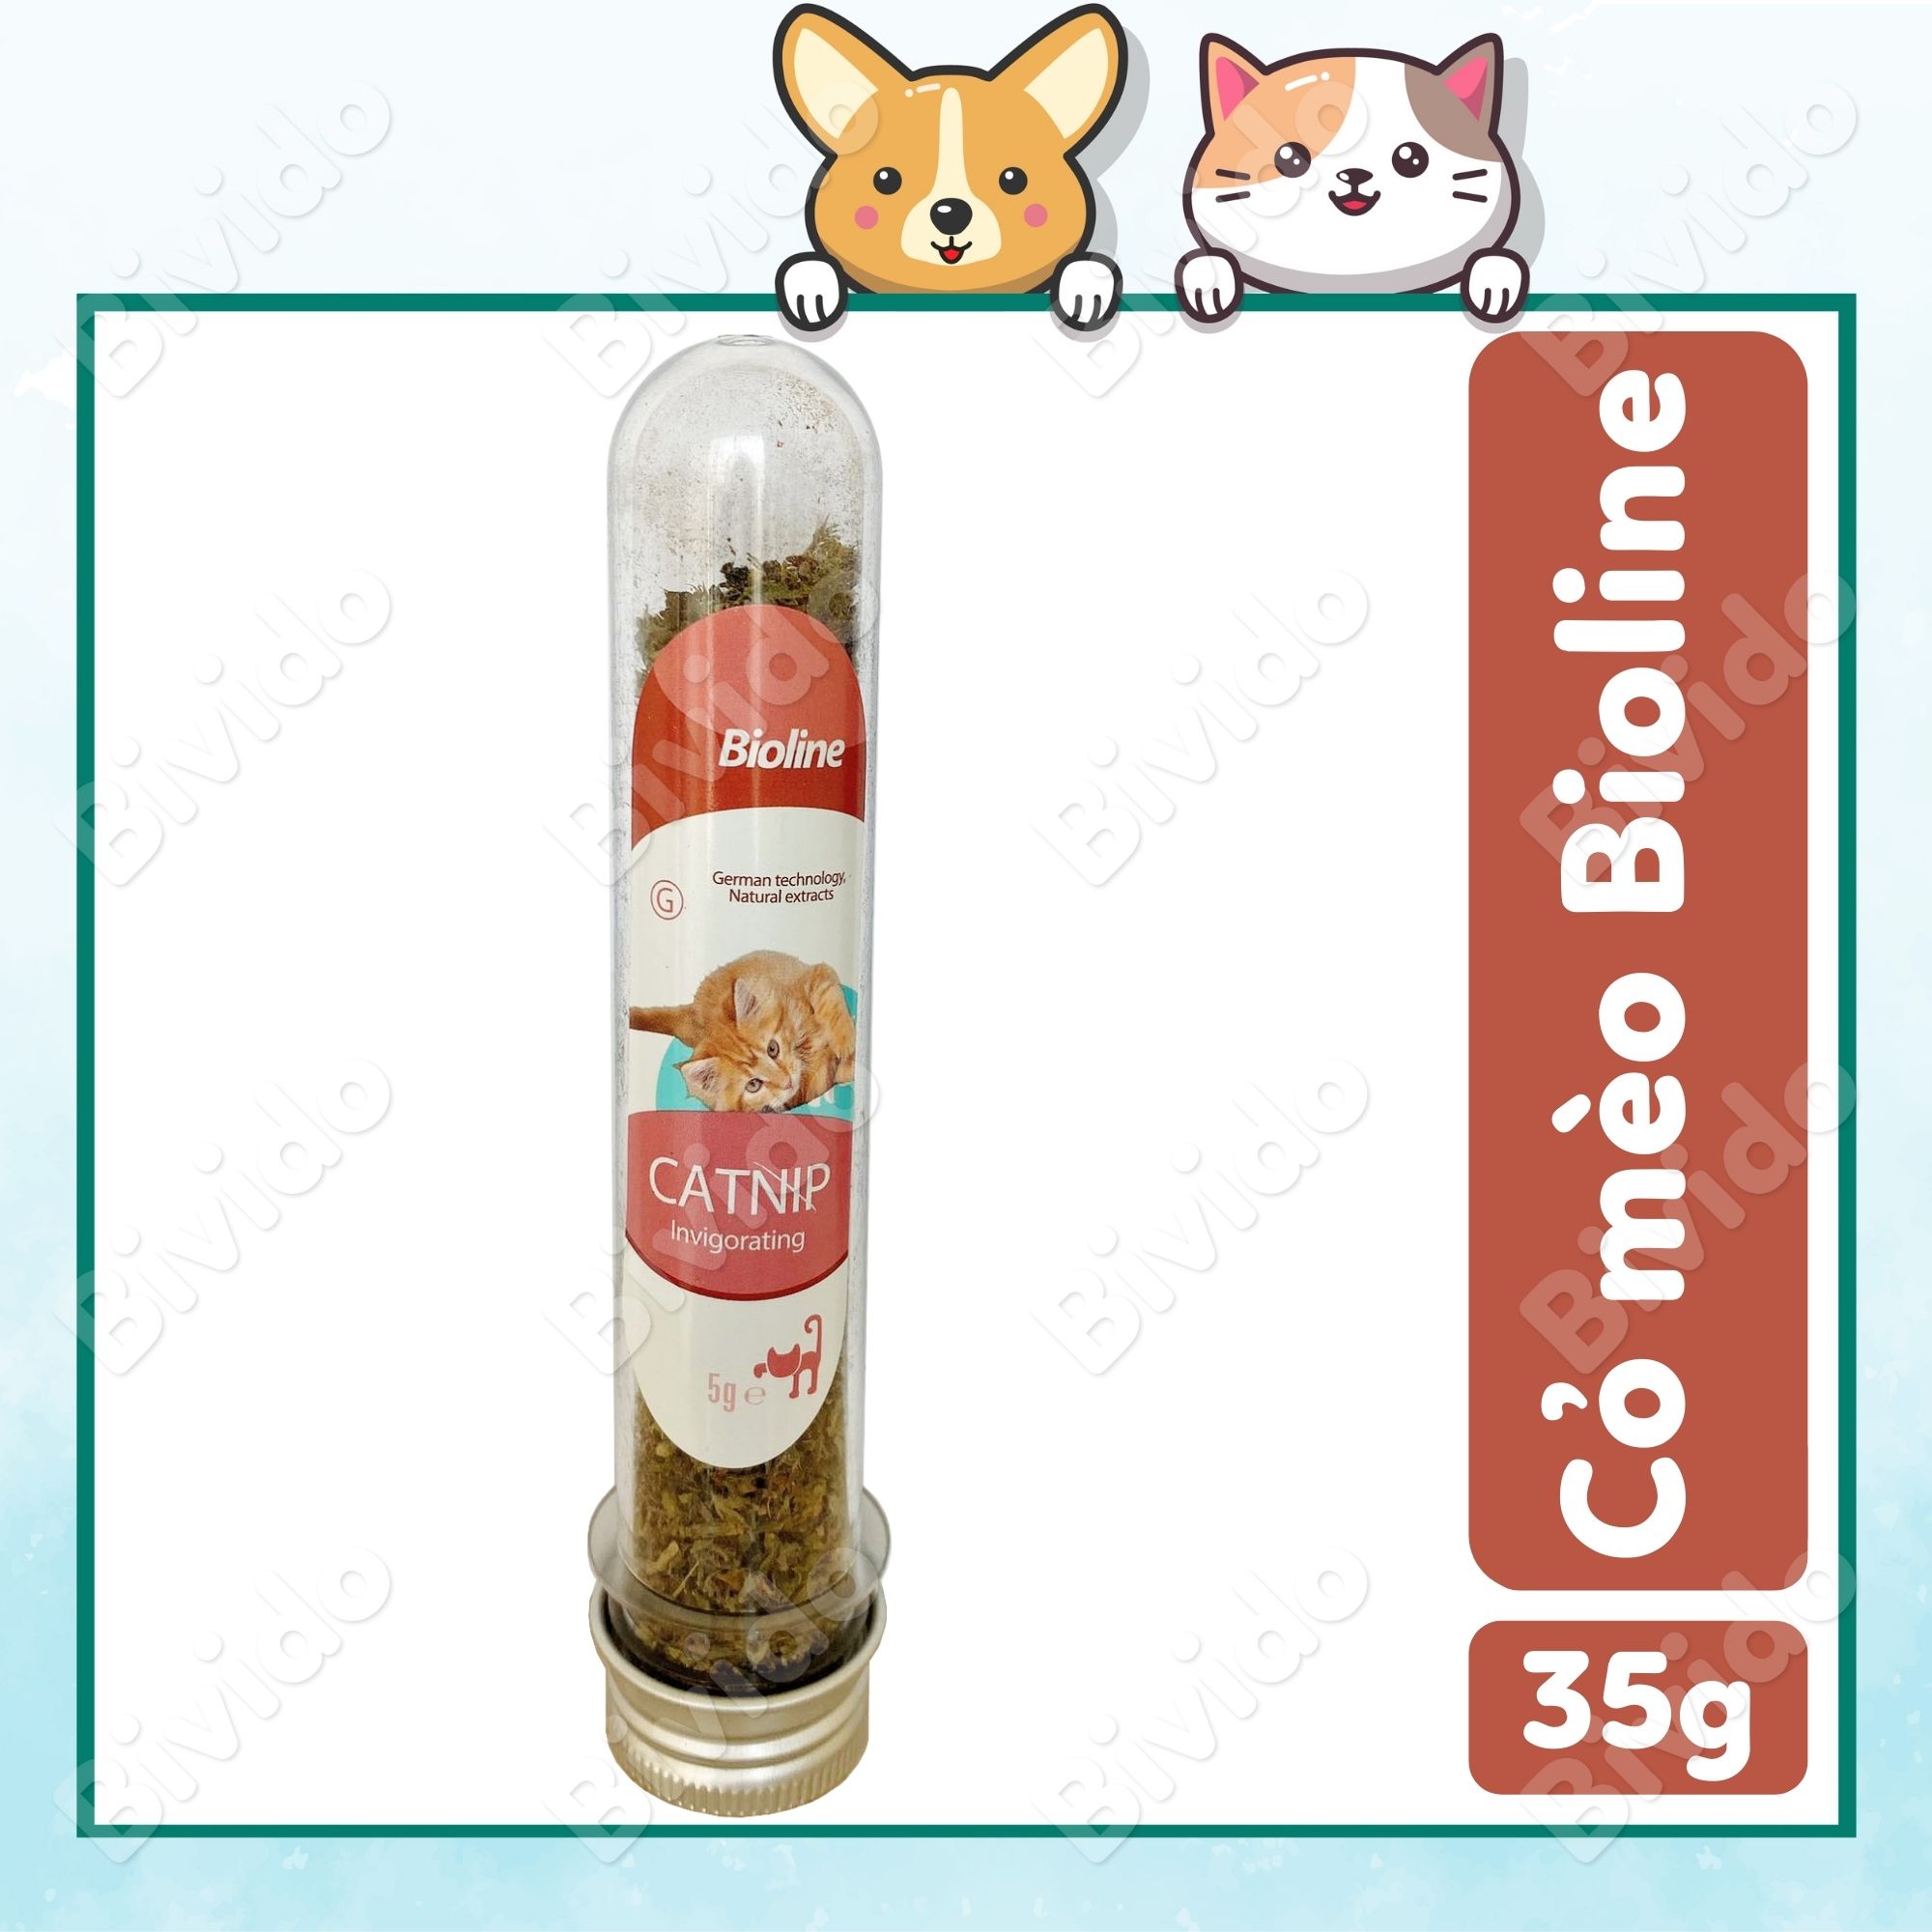 Ống cỏ mèo khô Catnip Bioline hương bạc hà giúp thư giãn, giảm stress